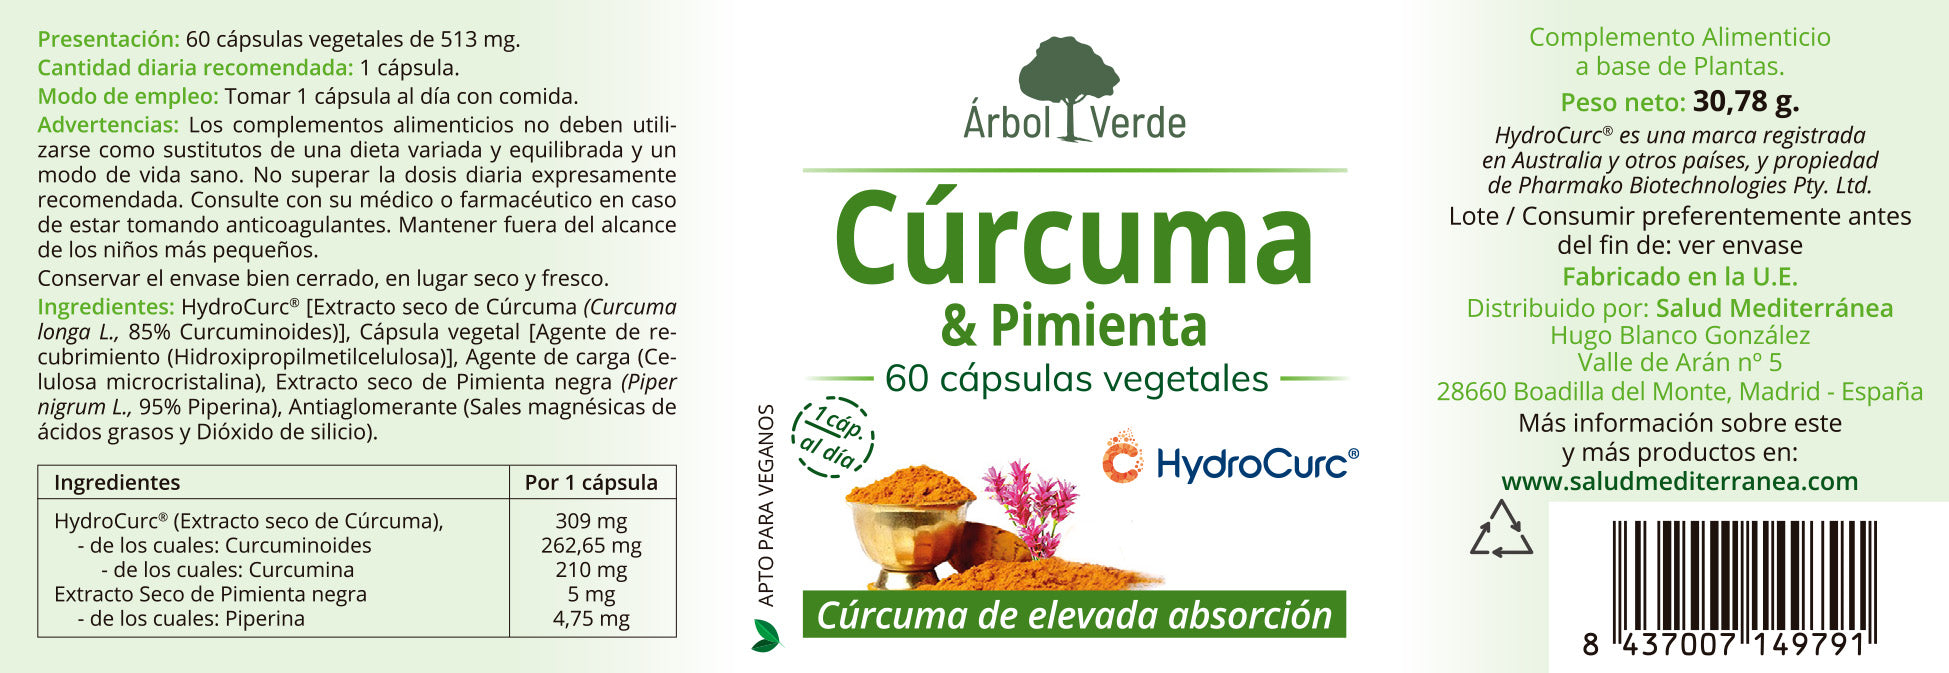 Cúrcuma & Pimienta - 60 Cápsulas Vegetales. Árbol Verde